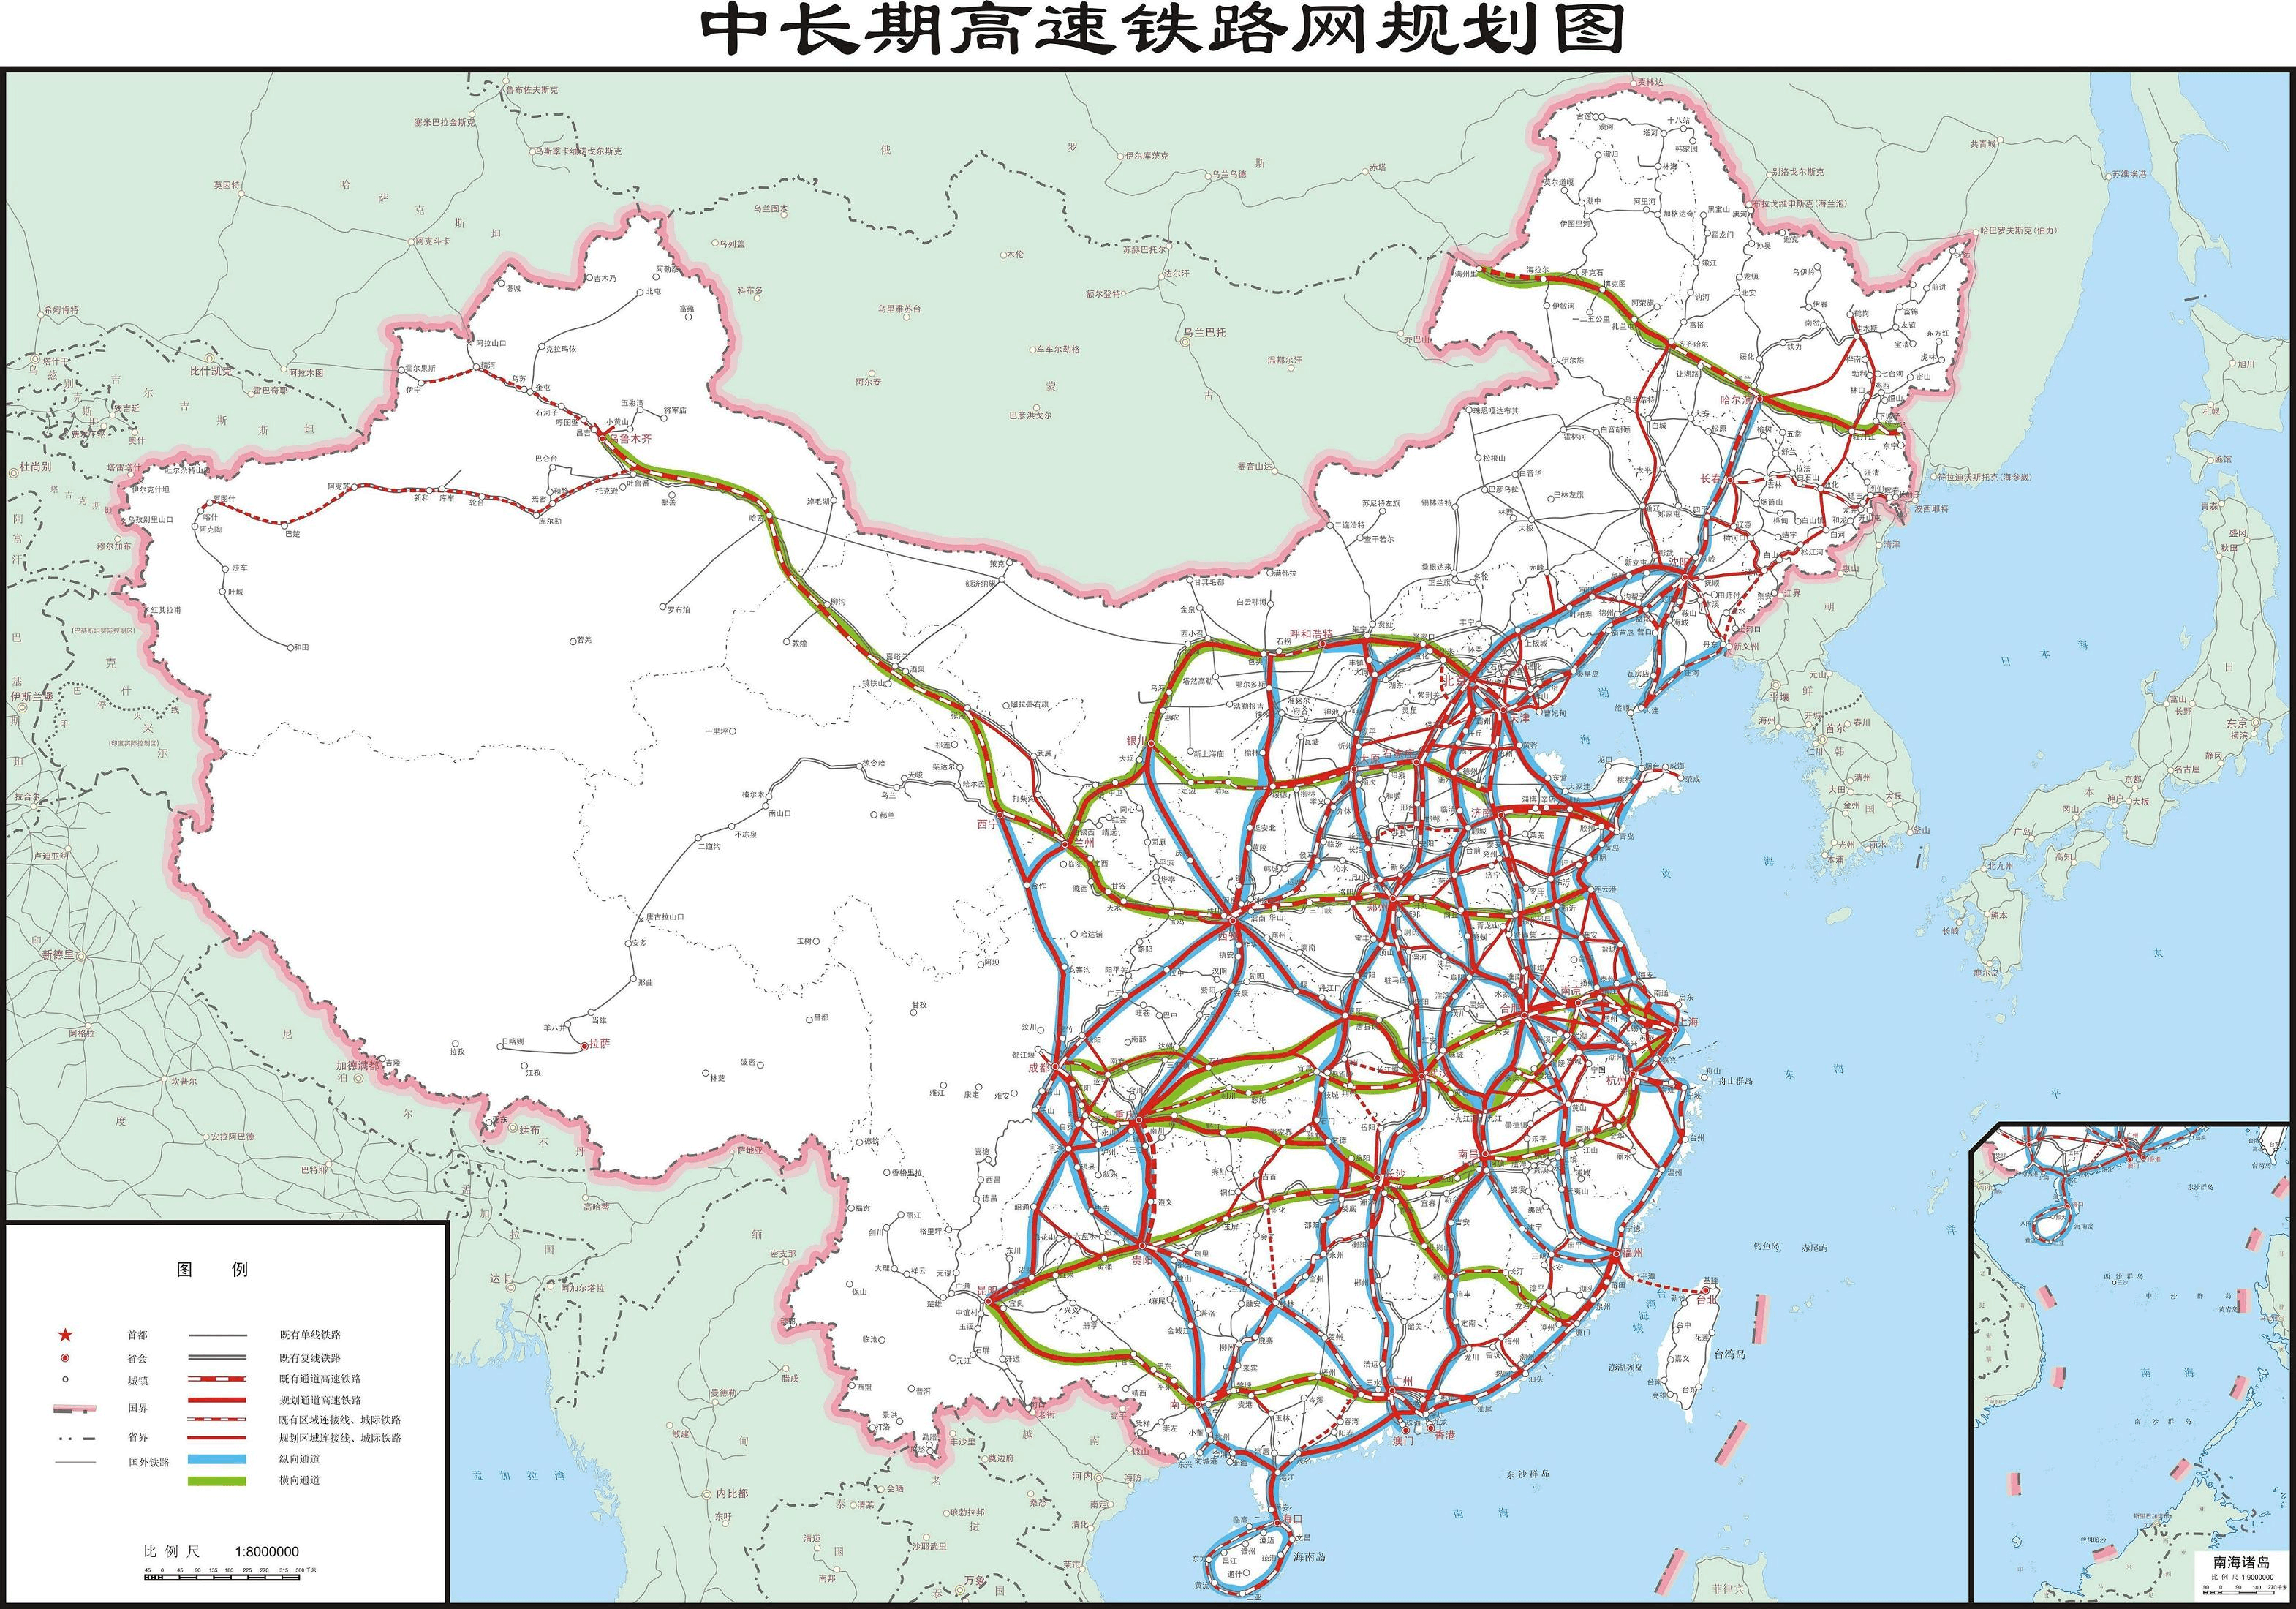 优发国际:一图看懂2025年中国铁路规划构筑八纵八横主通道前景